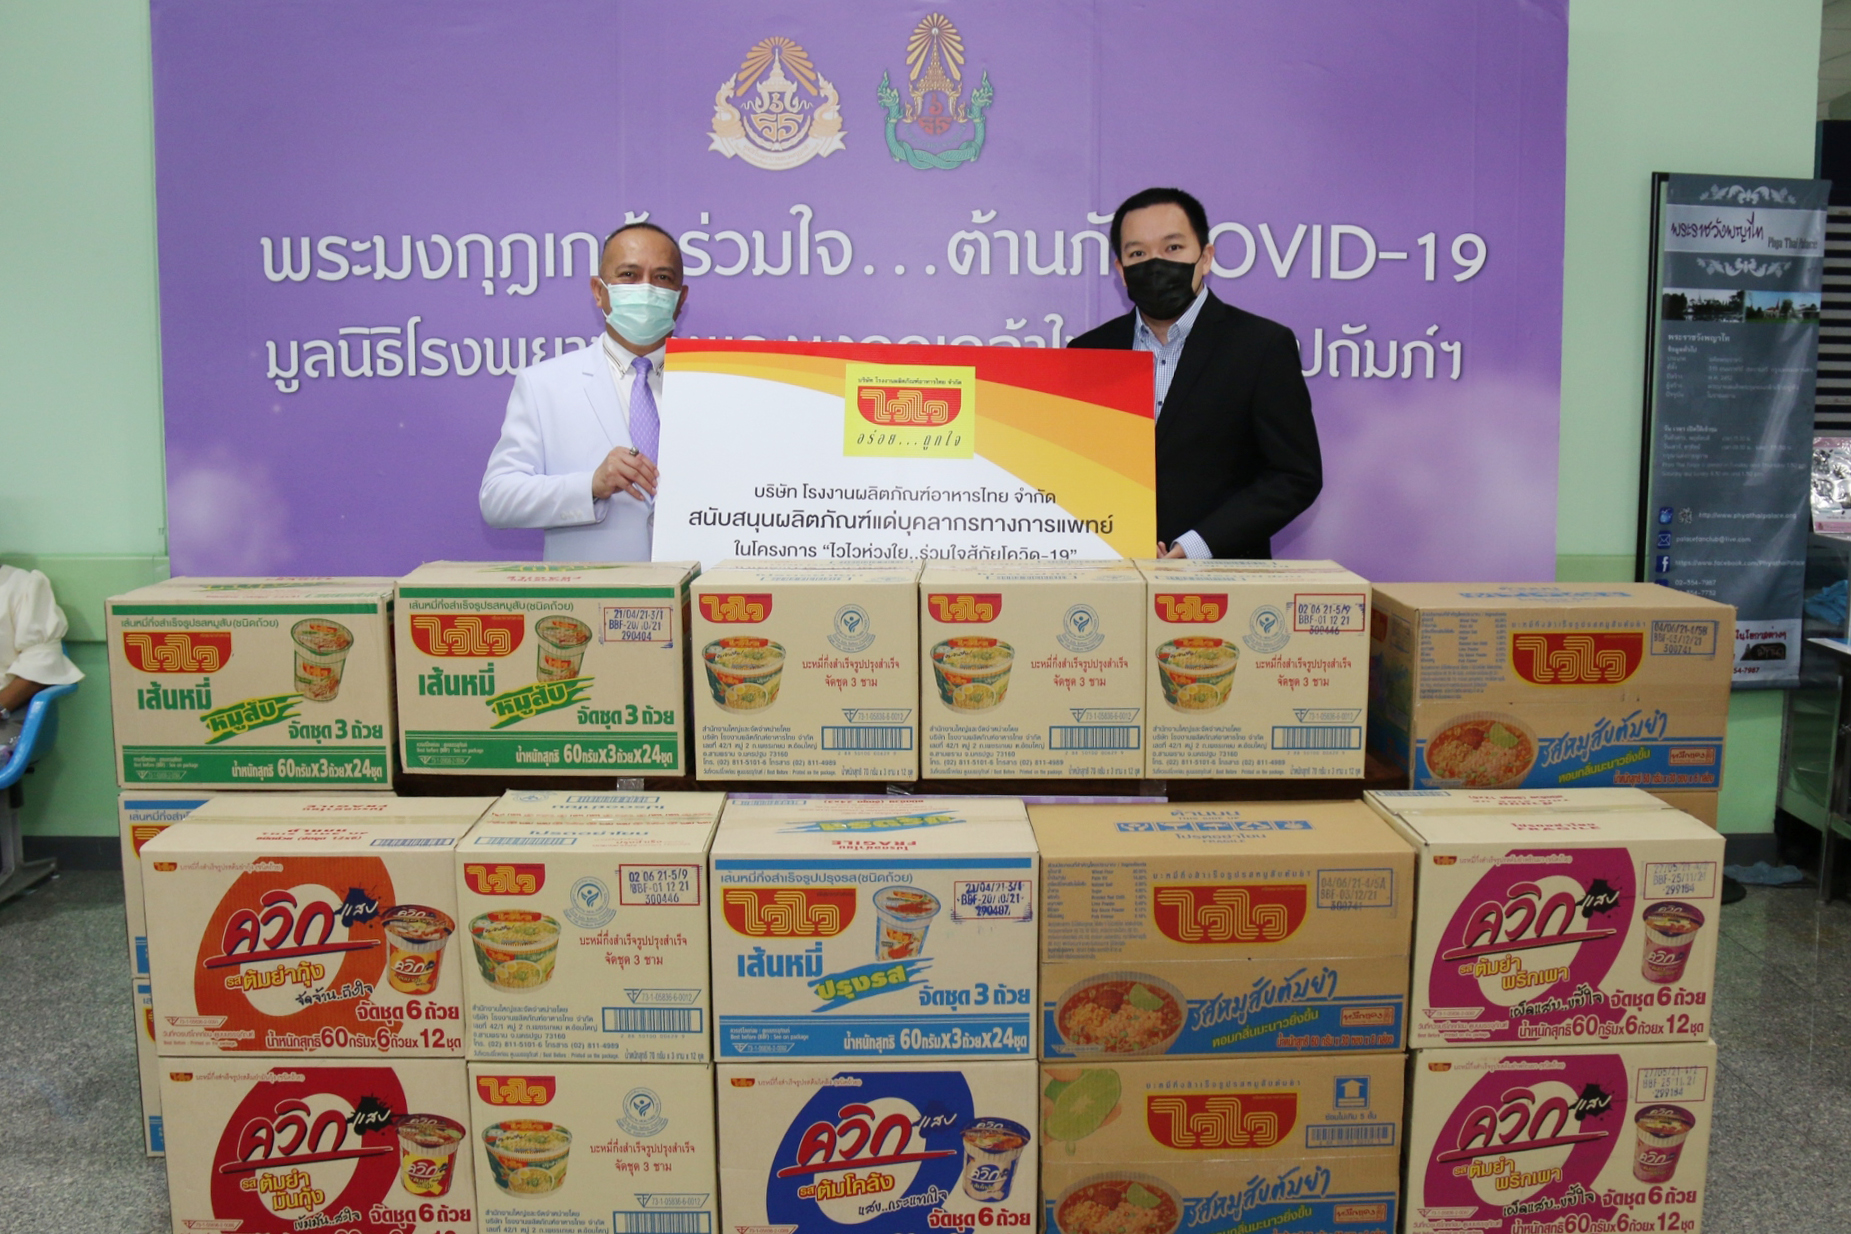 บริษัท โรงงานผลิตภัณฑ์อาหารไทย จำกัด ร่วมฝ่าวิกฤติ COVID-19 เดินสายส่งกำลังใจแก่ทีมแพทย์ โรงพยาบาลพระมงกุฎเกล้า